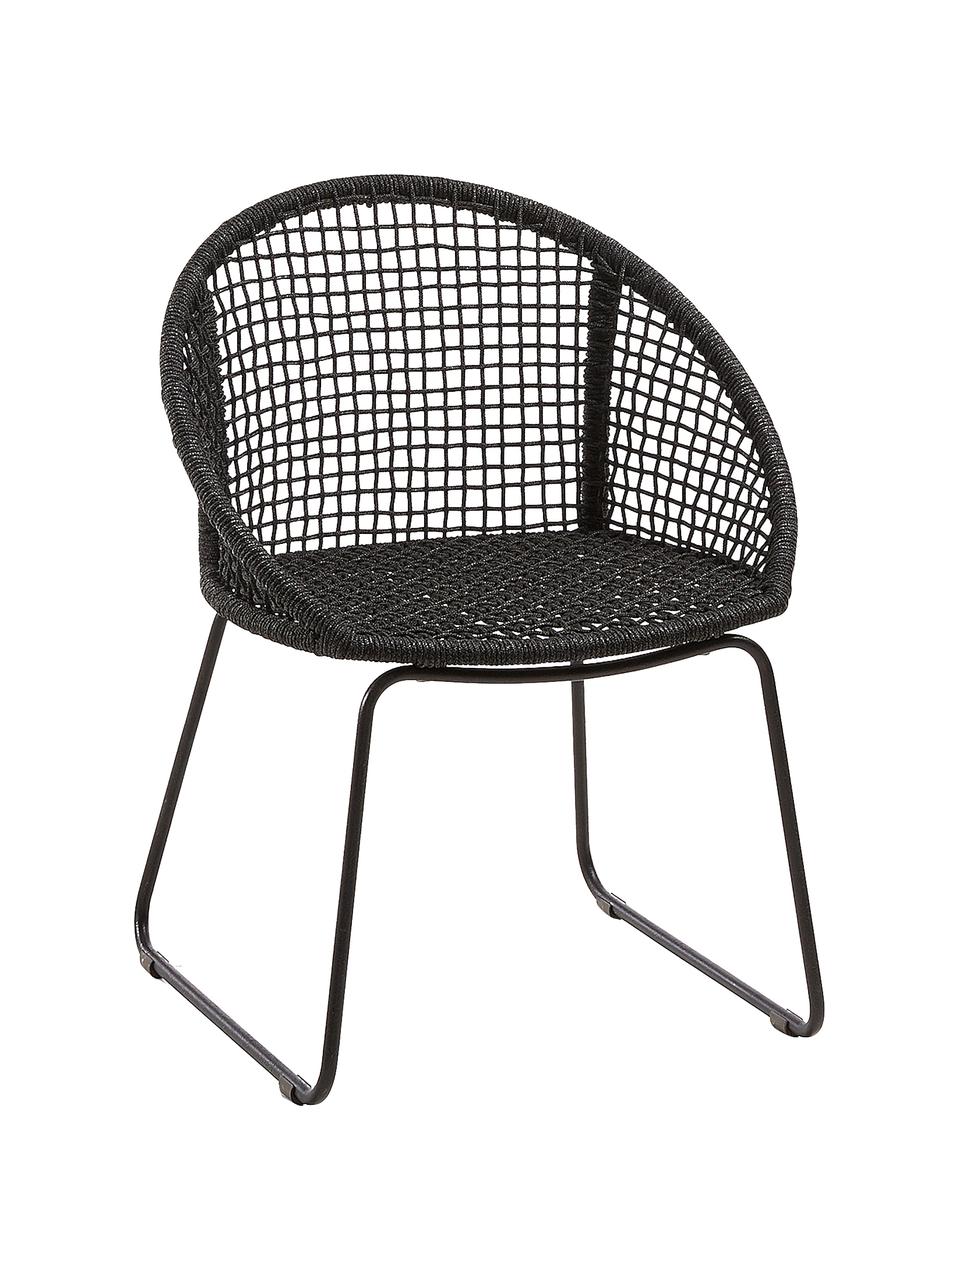 Garten-Armlehnstühle Sania, 2 Stück, Sitzschale: Polyester, UV-stabilisier, Beine: Metall, pulverbeschichtet, Dunkelgrau, B 65 x T 58 cm